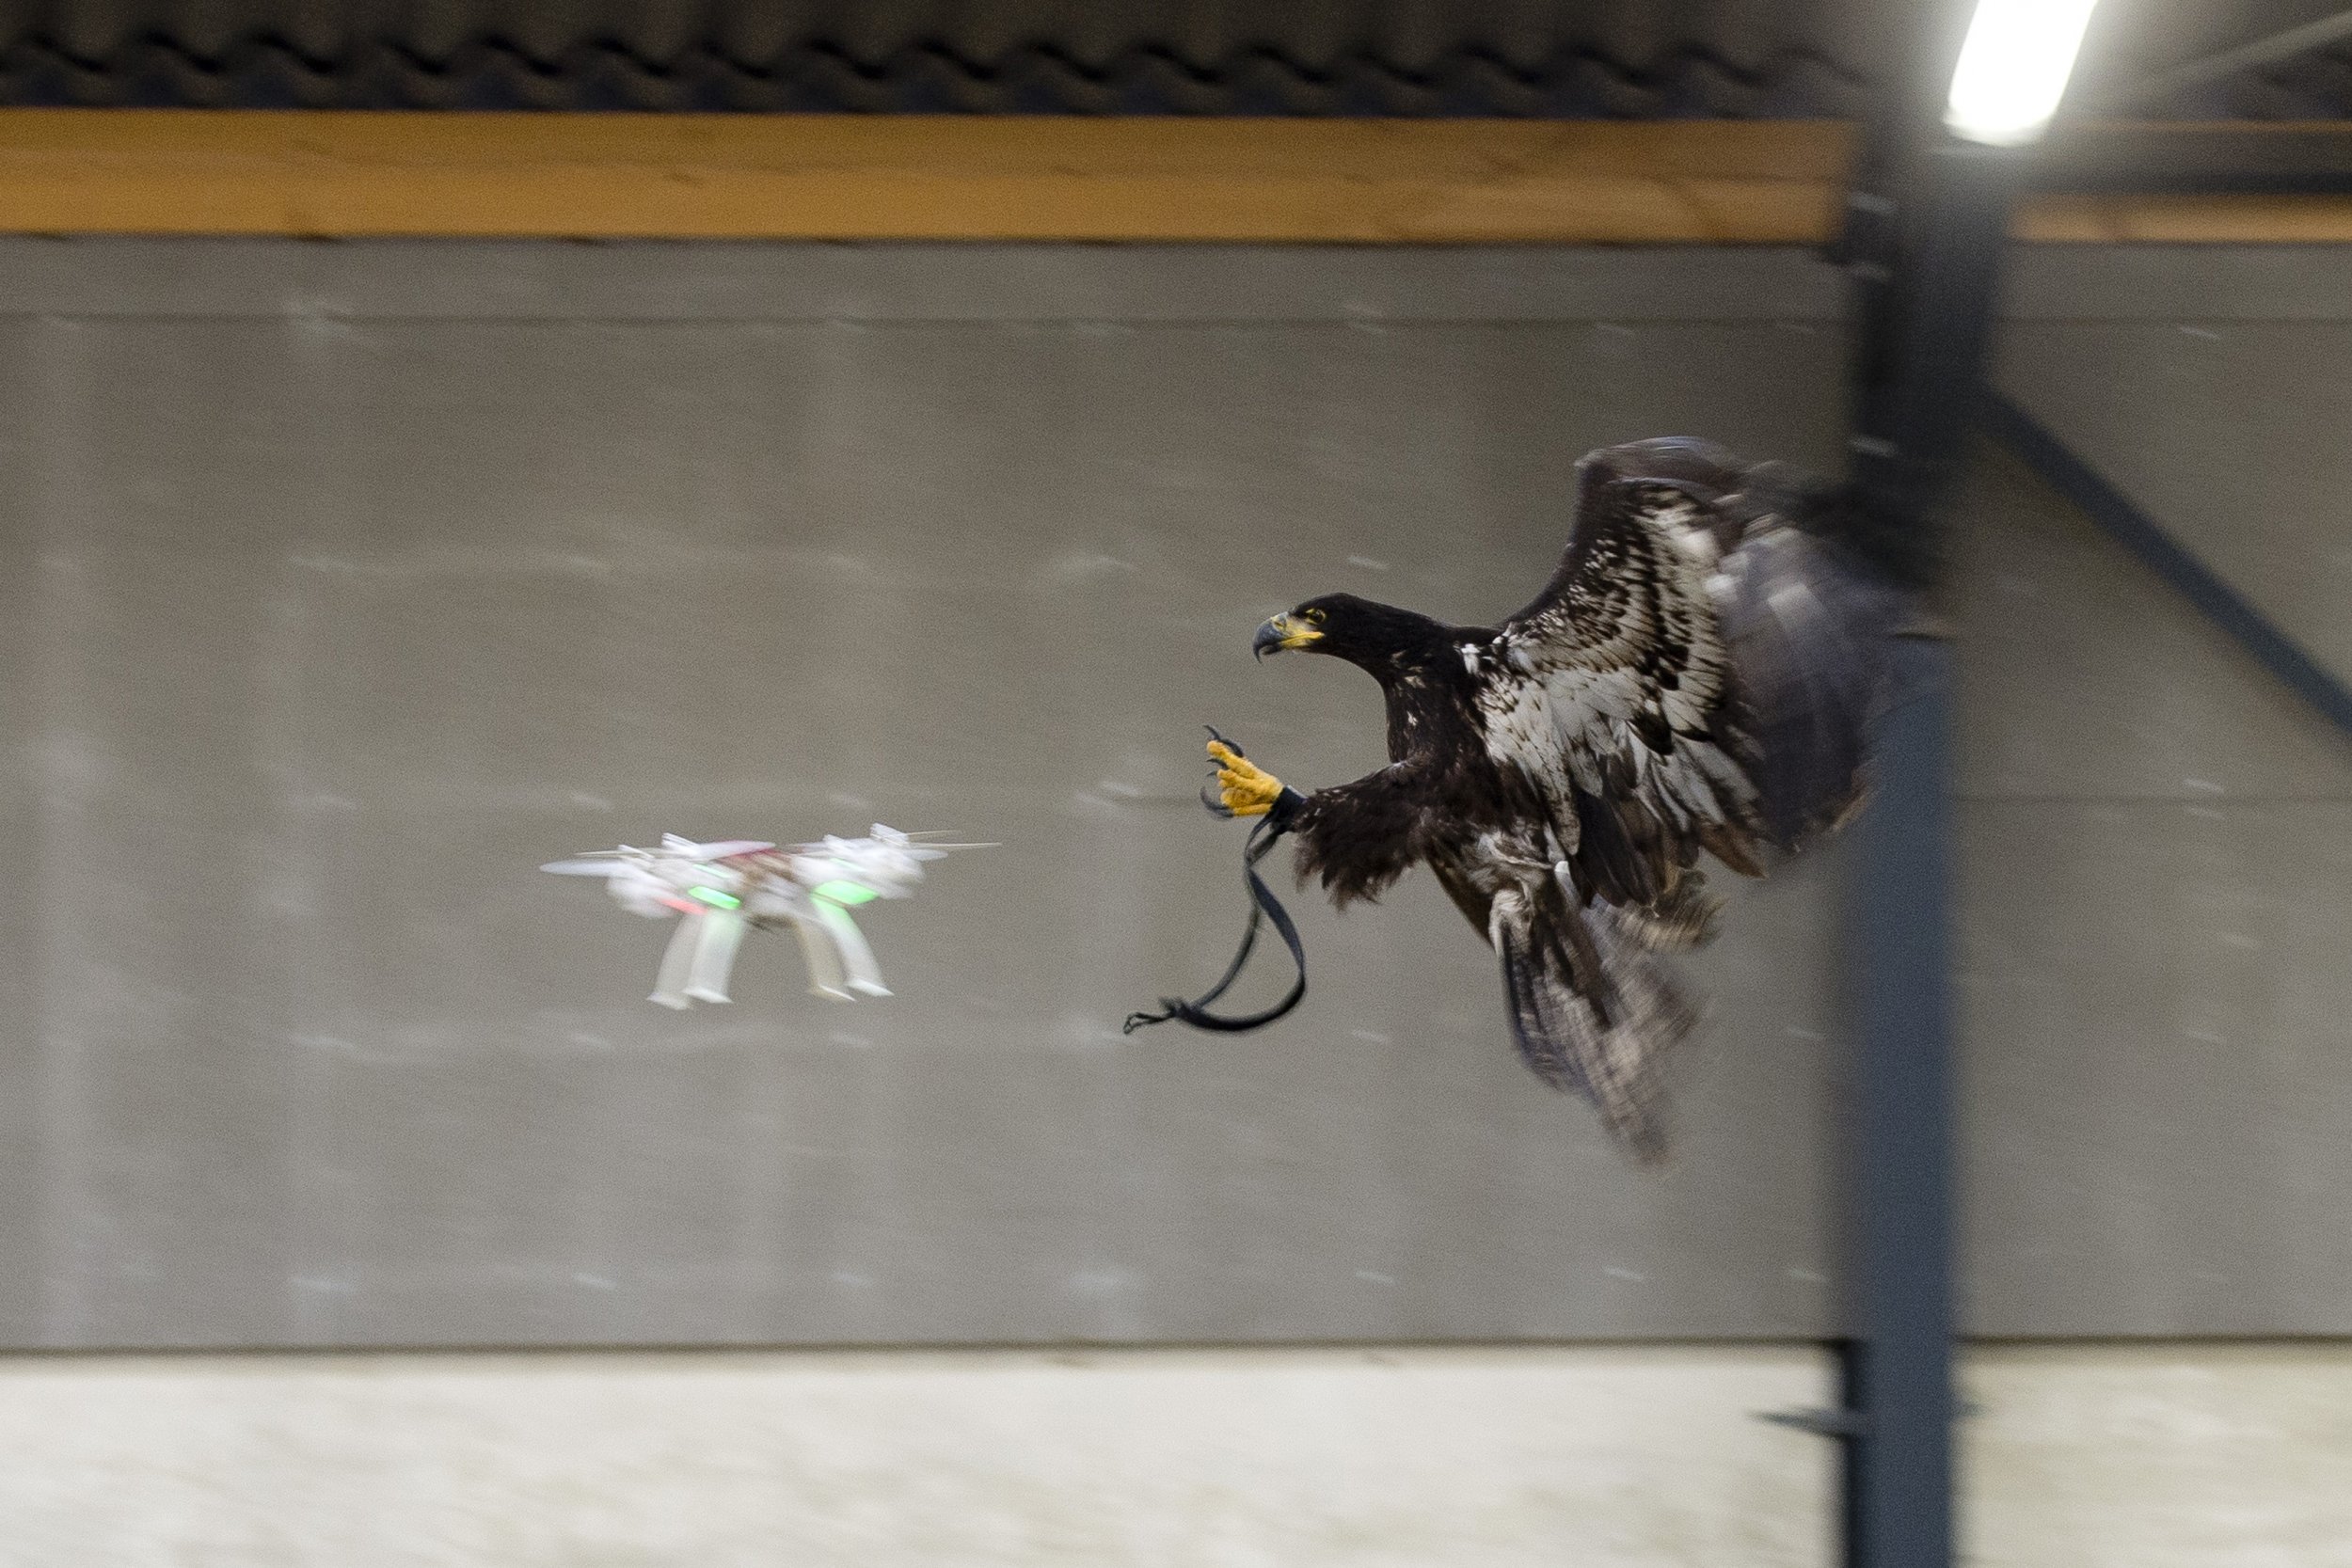 drone eagle catcher uav quadcopter police